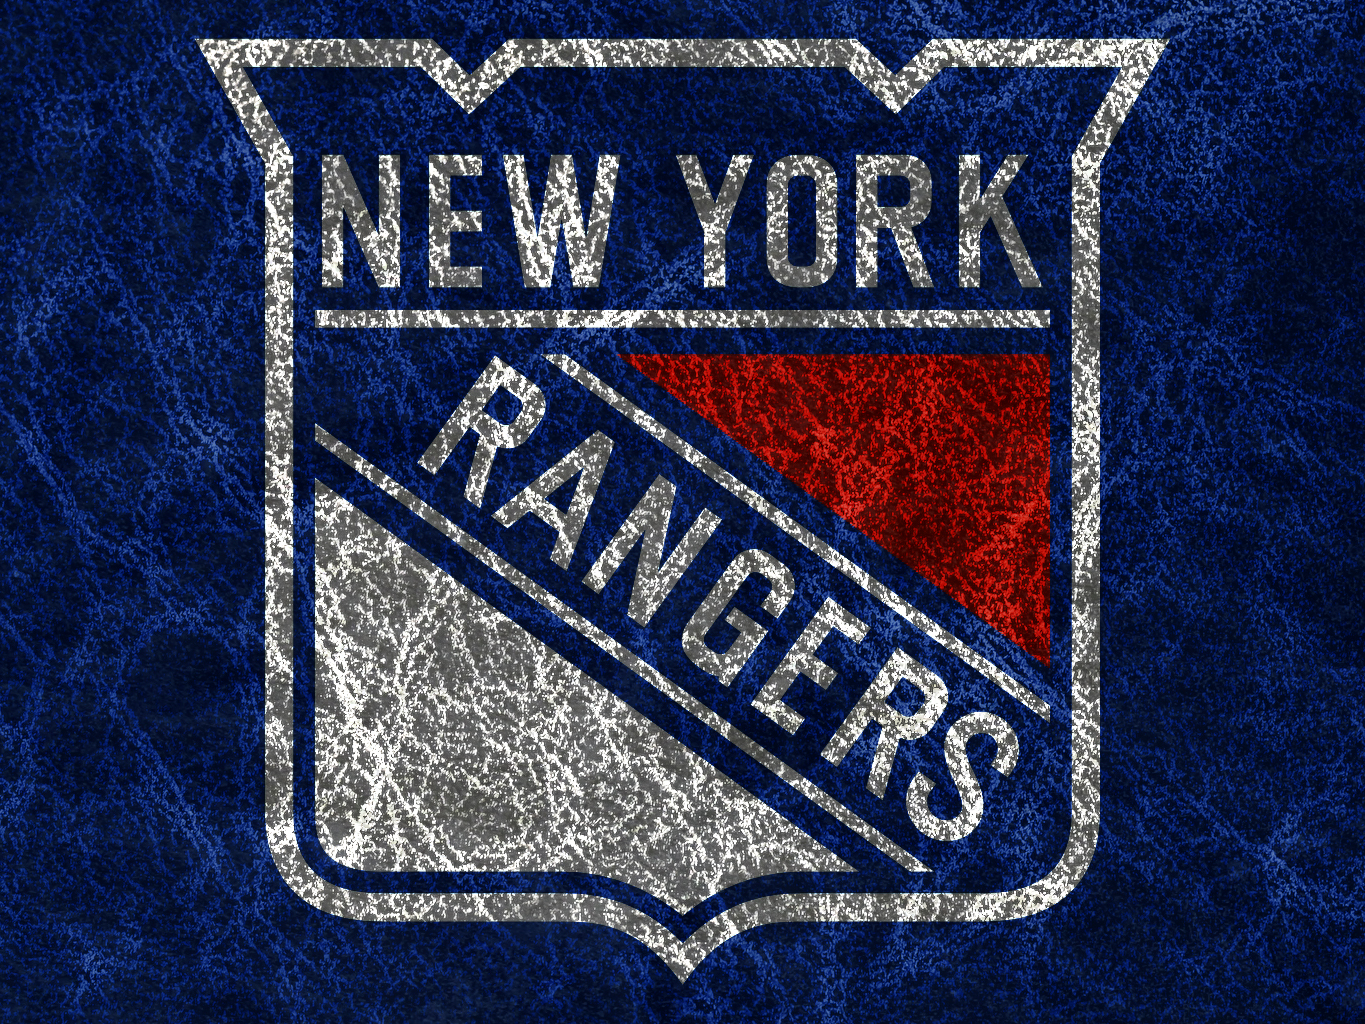 New York Rangers Wallpaper 6863677